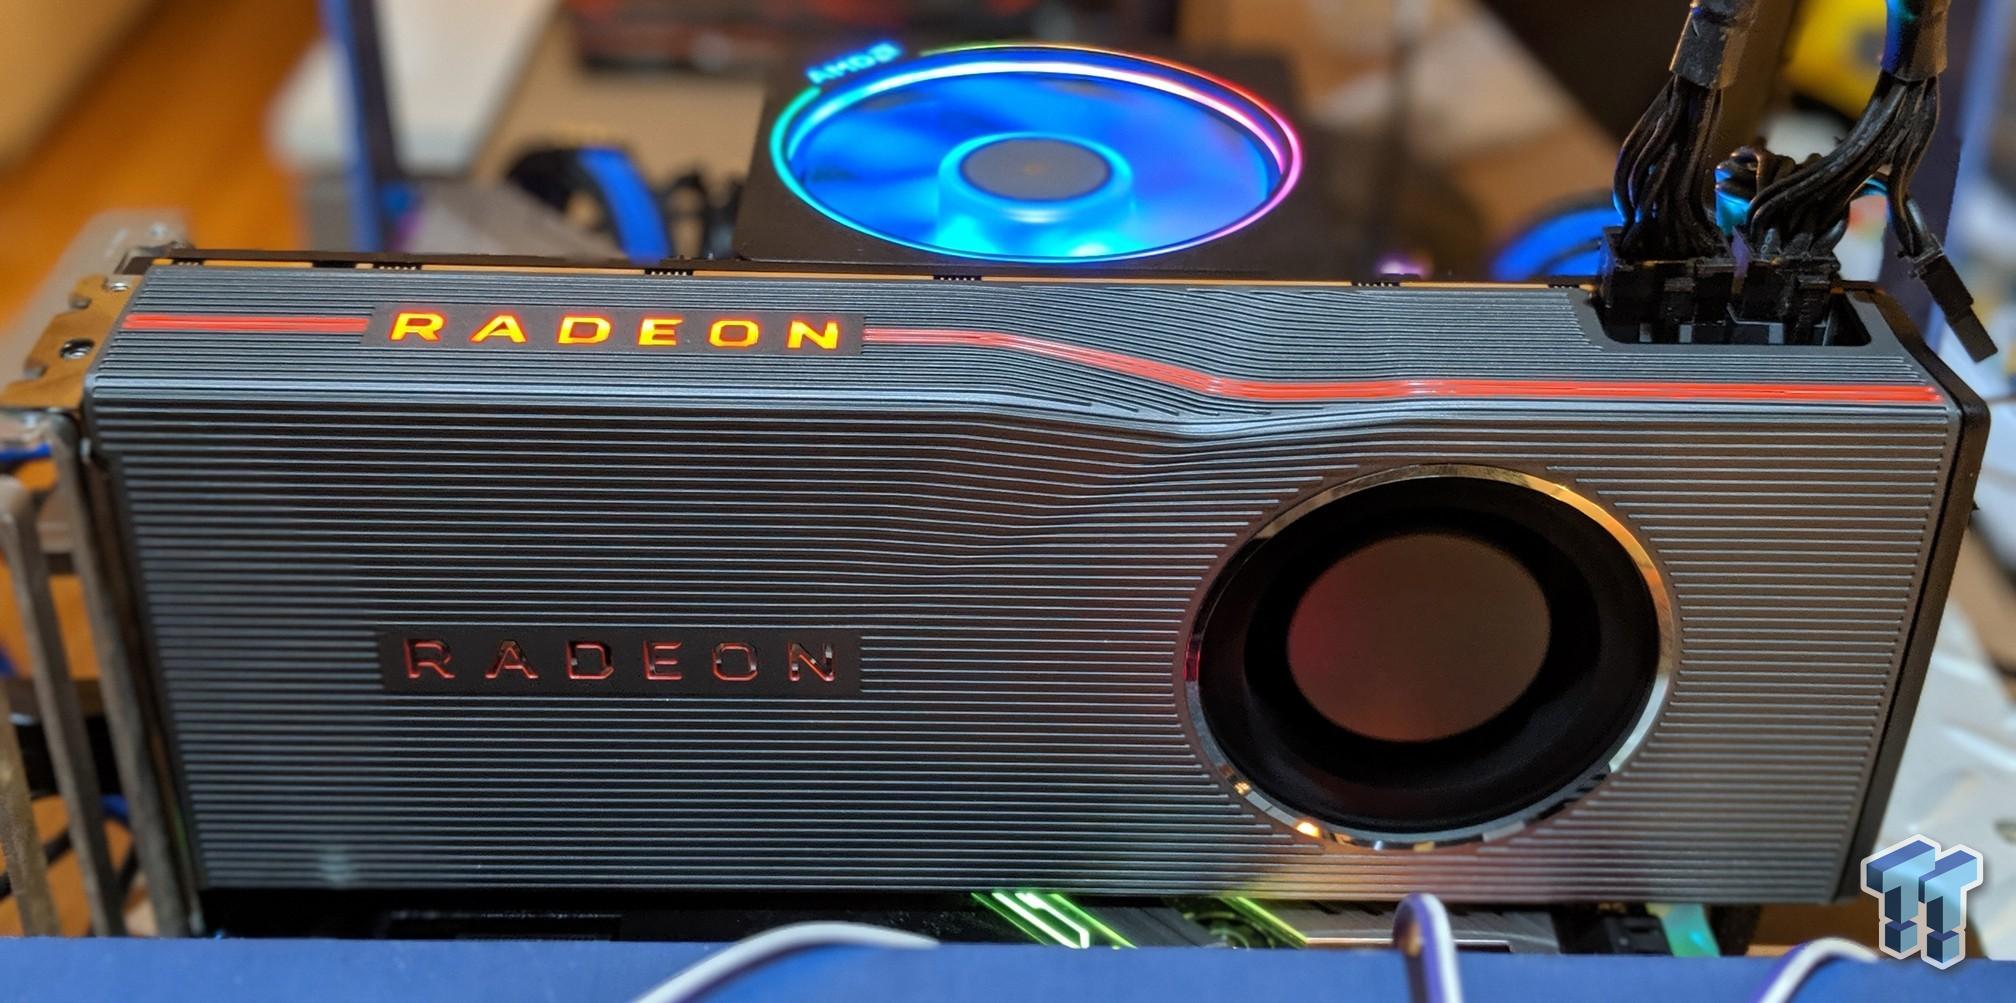 AMD Radeon RX 5700 XT/RX 5700: A Step 